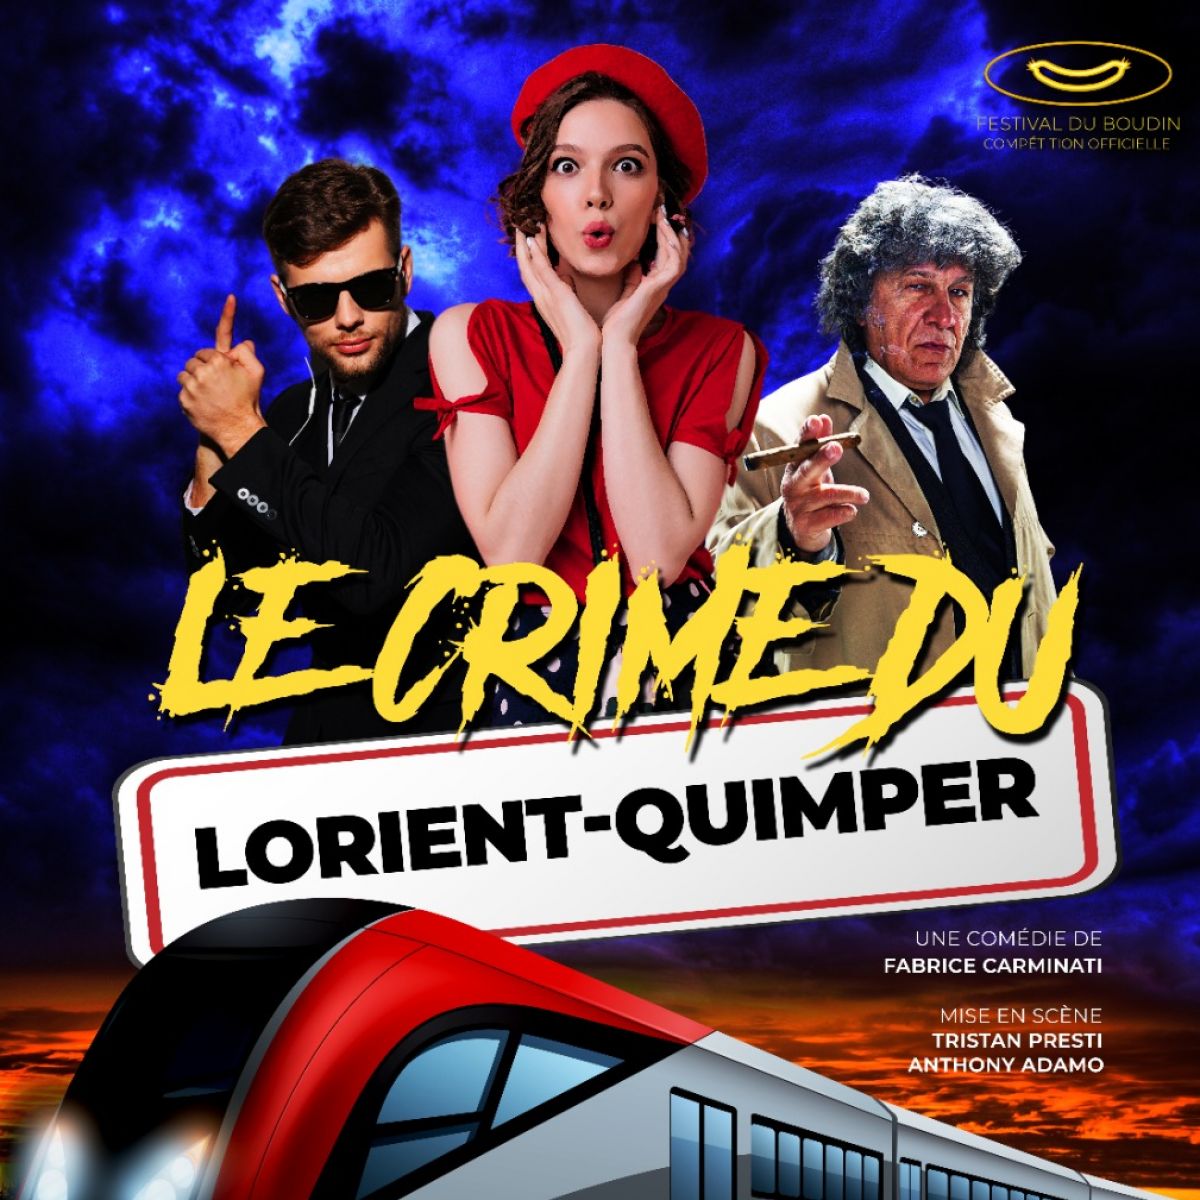 Le Crime du Lorient-Quimper